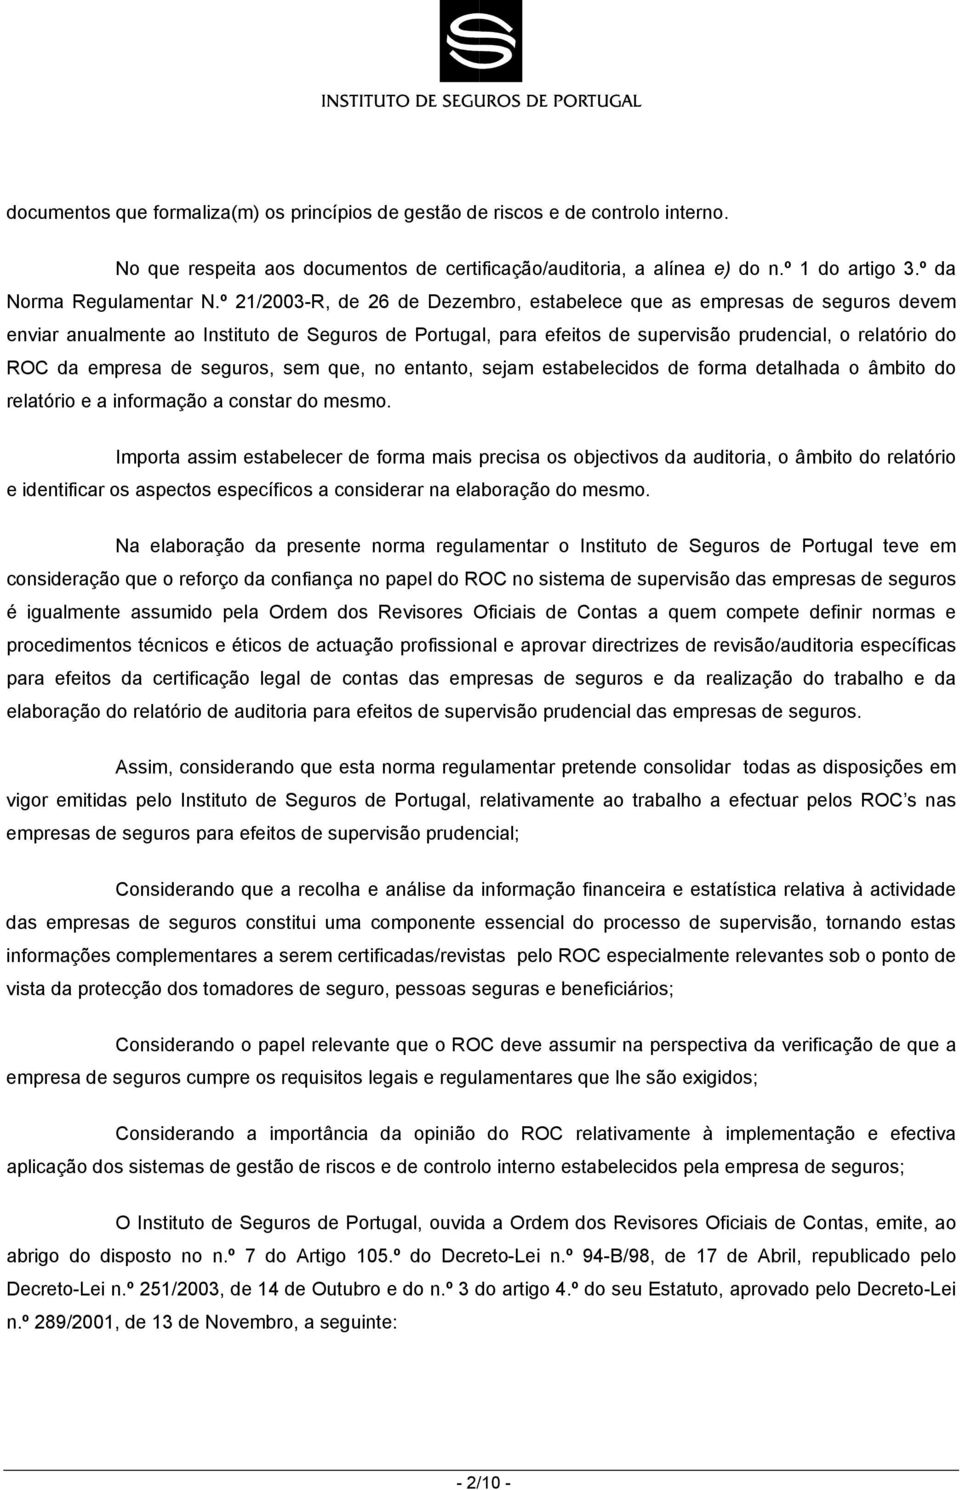 º 21/2003-R, de 26 de Dezembro, estabelece que as empresas de seguros devem enviar anualmente ao Instituto de Seguros de Portugal, para efeitos de supervisão prudencial, o relatório do ROC da empresa